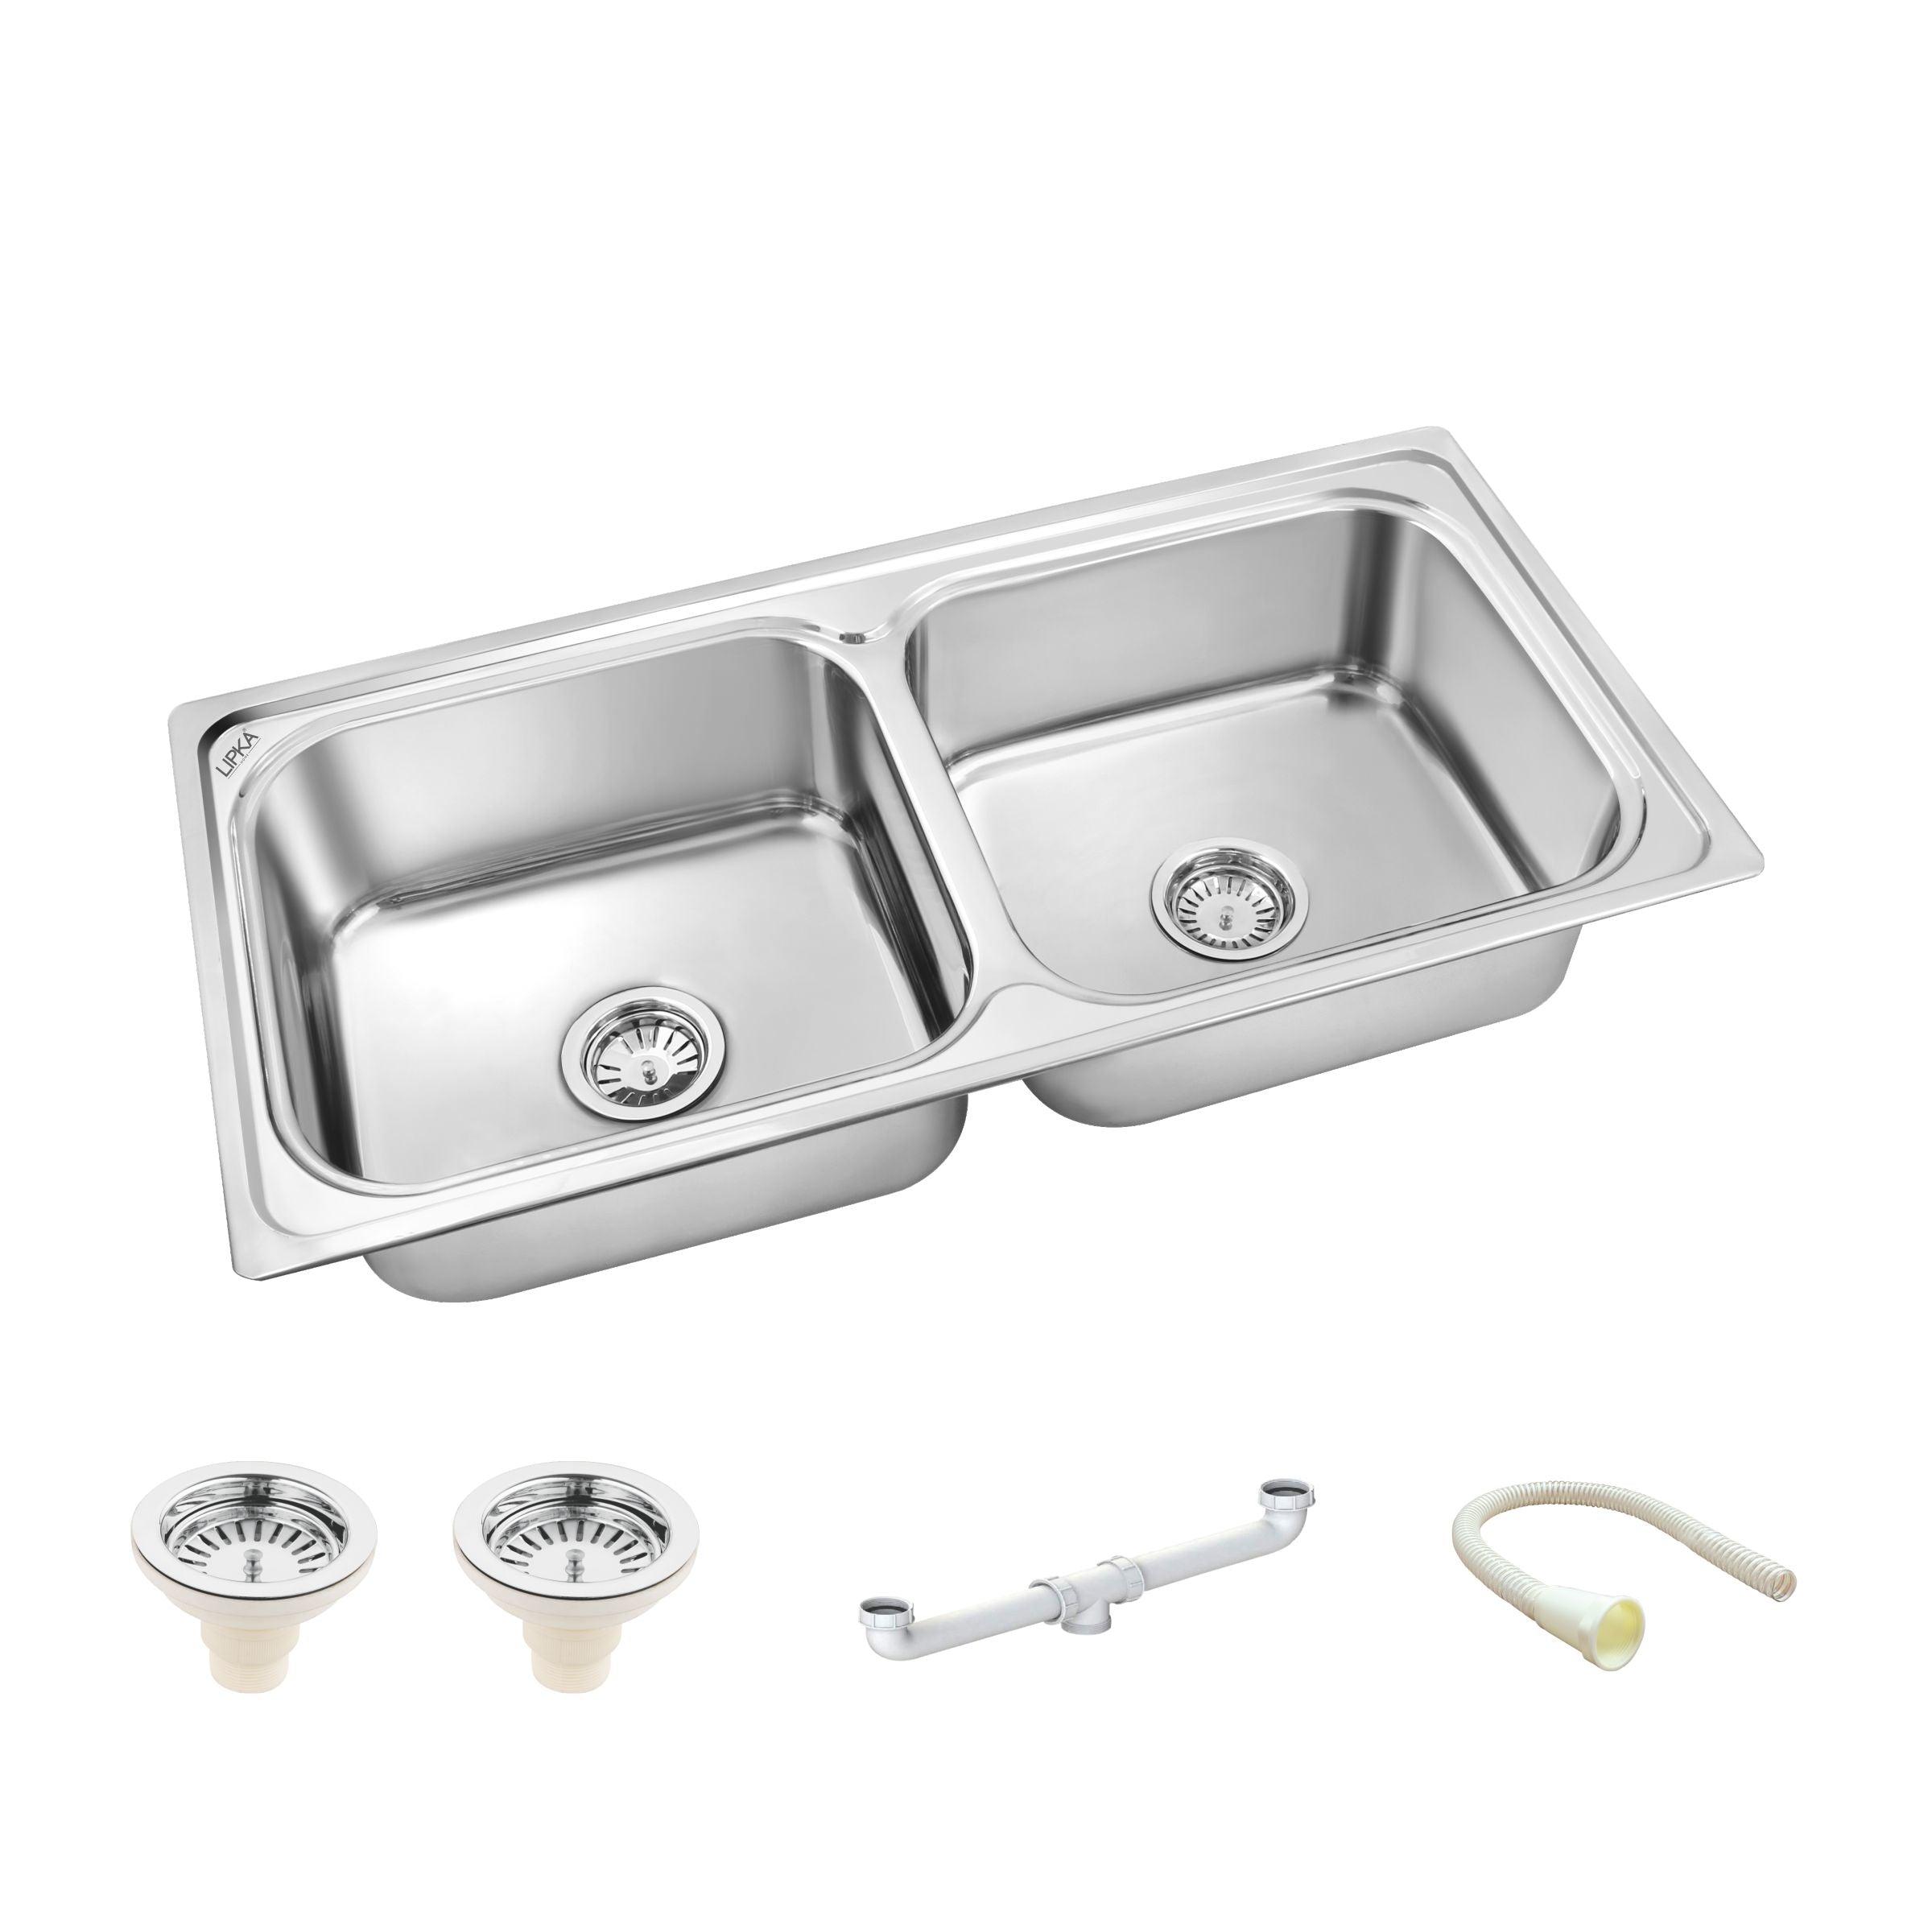 Square Double Bowl Kitchen Sink (45 x 20 x 9 Inches) - LIPKA - Lipka Home